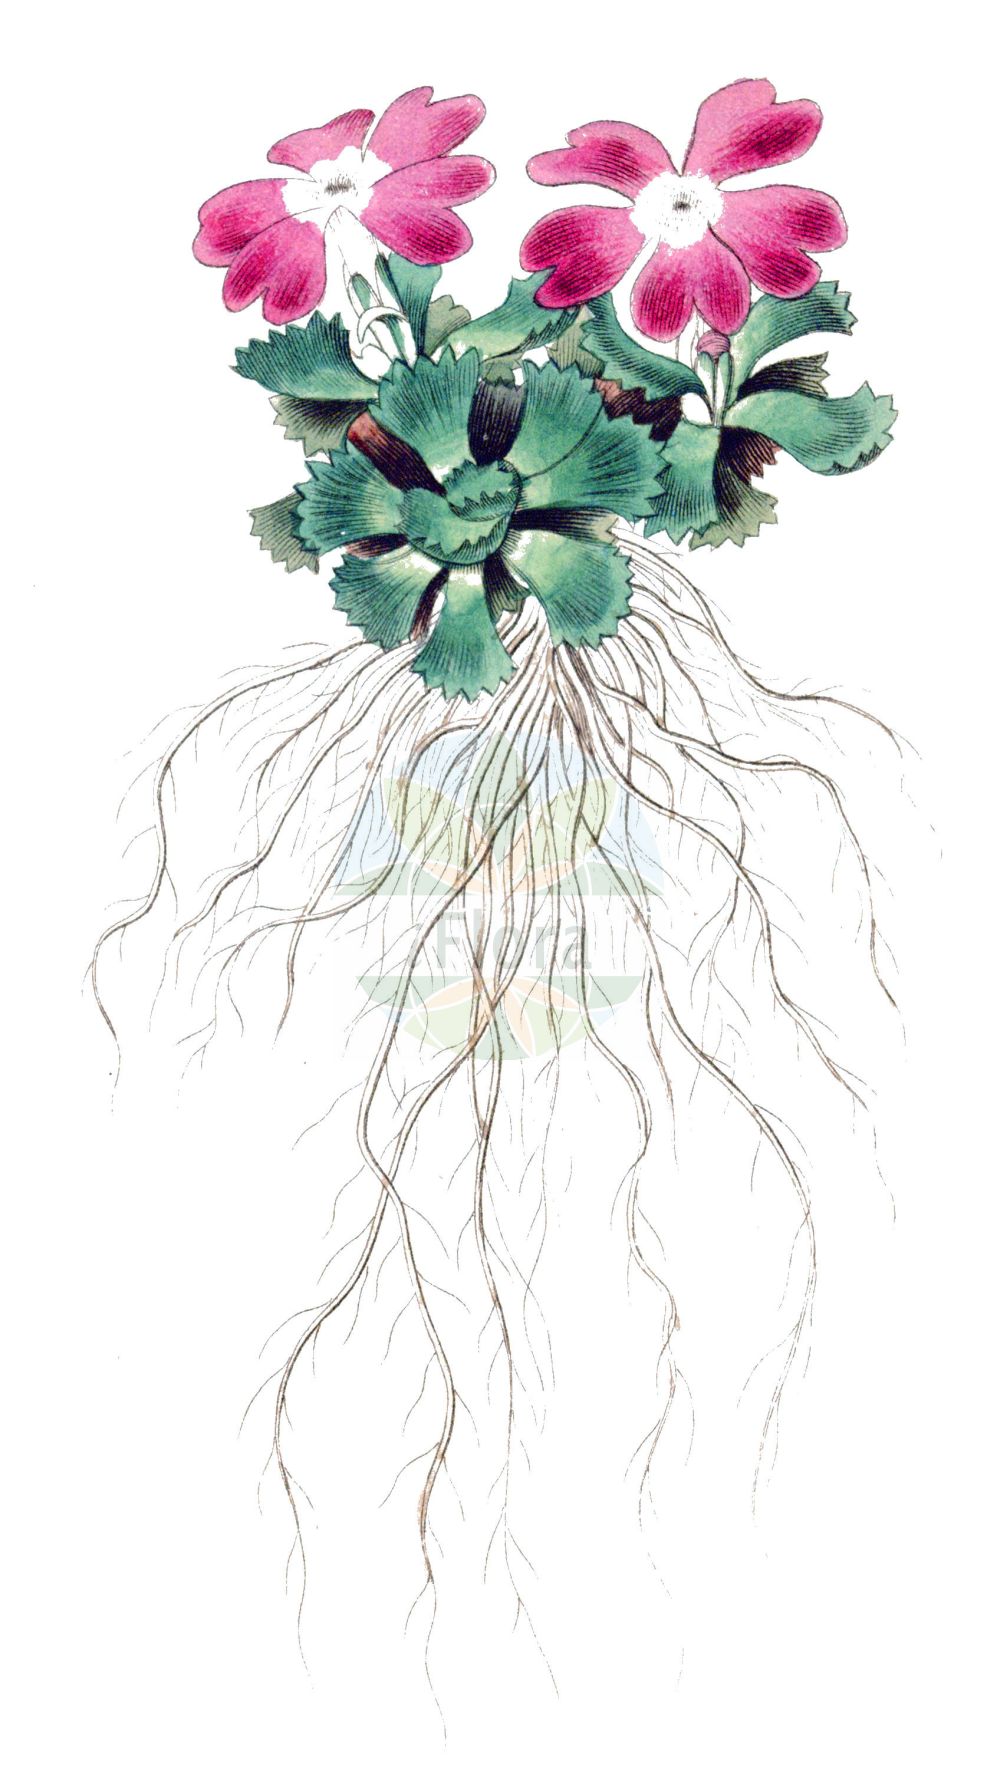 Historische Abbildung von Primula minima (Zwerg-Schlüsselblume - Dwarf Primrose). Das Bild zeigt Blatt, Bluete, Frucht und Same. ---- Historical Drawing of Primula minima (Zwerg-Schlüsselblume - Dwarf Primrose). The image is showing leaf, flower, fruit and seed.(Primula minima,Zwerg-Schlüsselblume,Dwarf Primrose,Primula minima,Zwerg-Schluesselblume,Habmichlieb,Dwarf Primrose,Least Primrose,Primula,Schlüsselblume,Primrose,Primulaceae,Schlüsselblumengewächse,Primrose family,Blatt,Bluete,Frucht,Same,leaf,flower,fruit,seed)